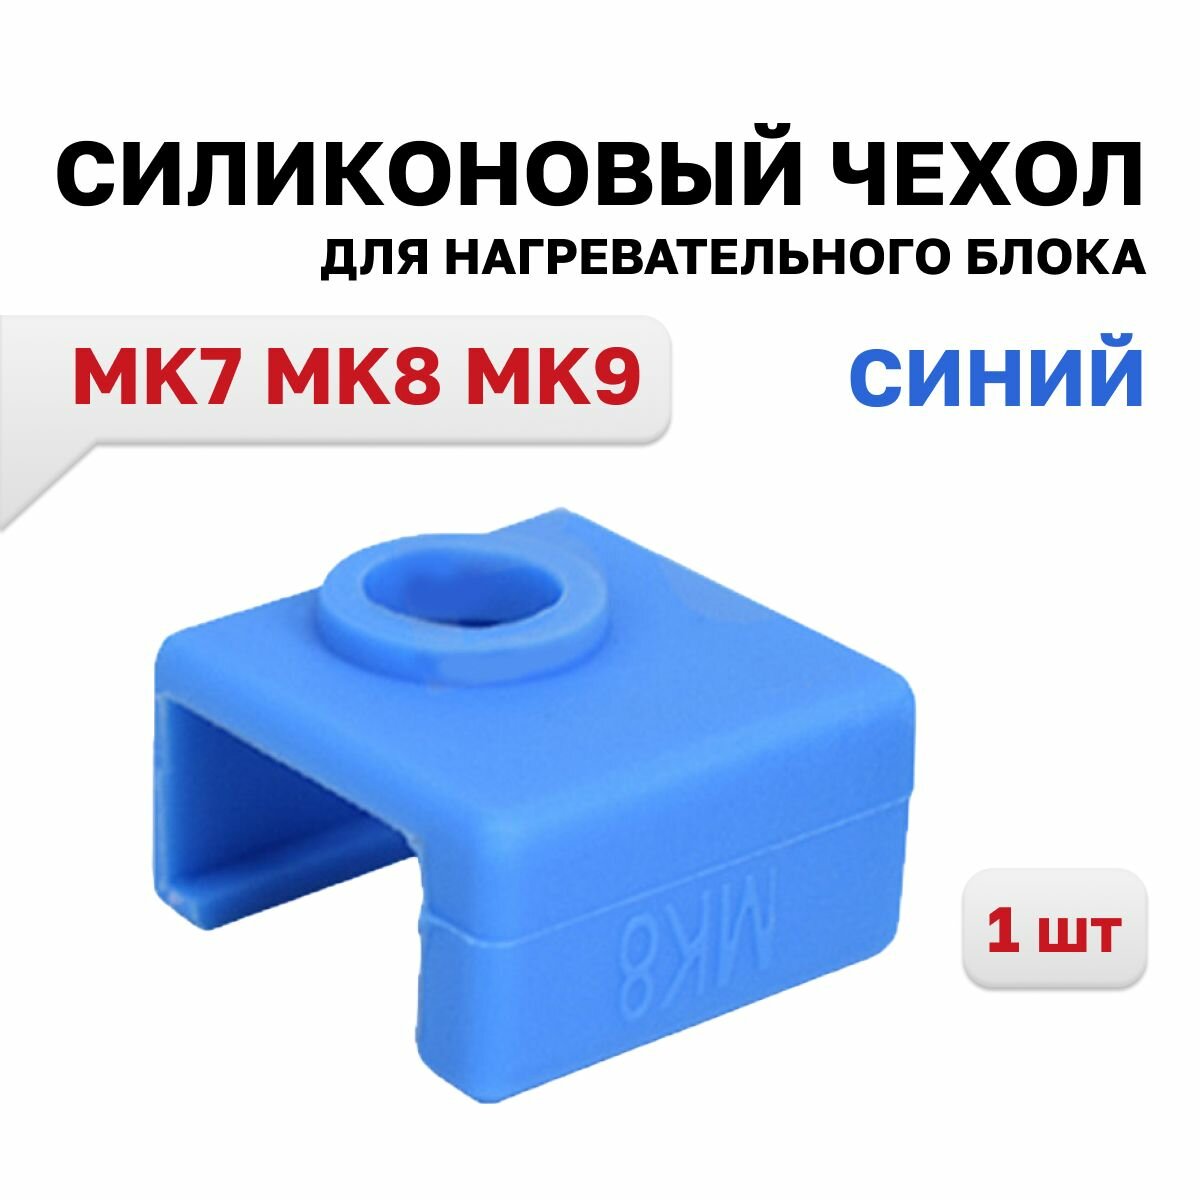 Силиконовый чехол для нагревательного блока MK7 MK8 MK9 синий 1 шт.